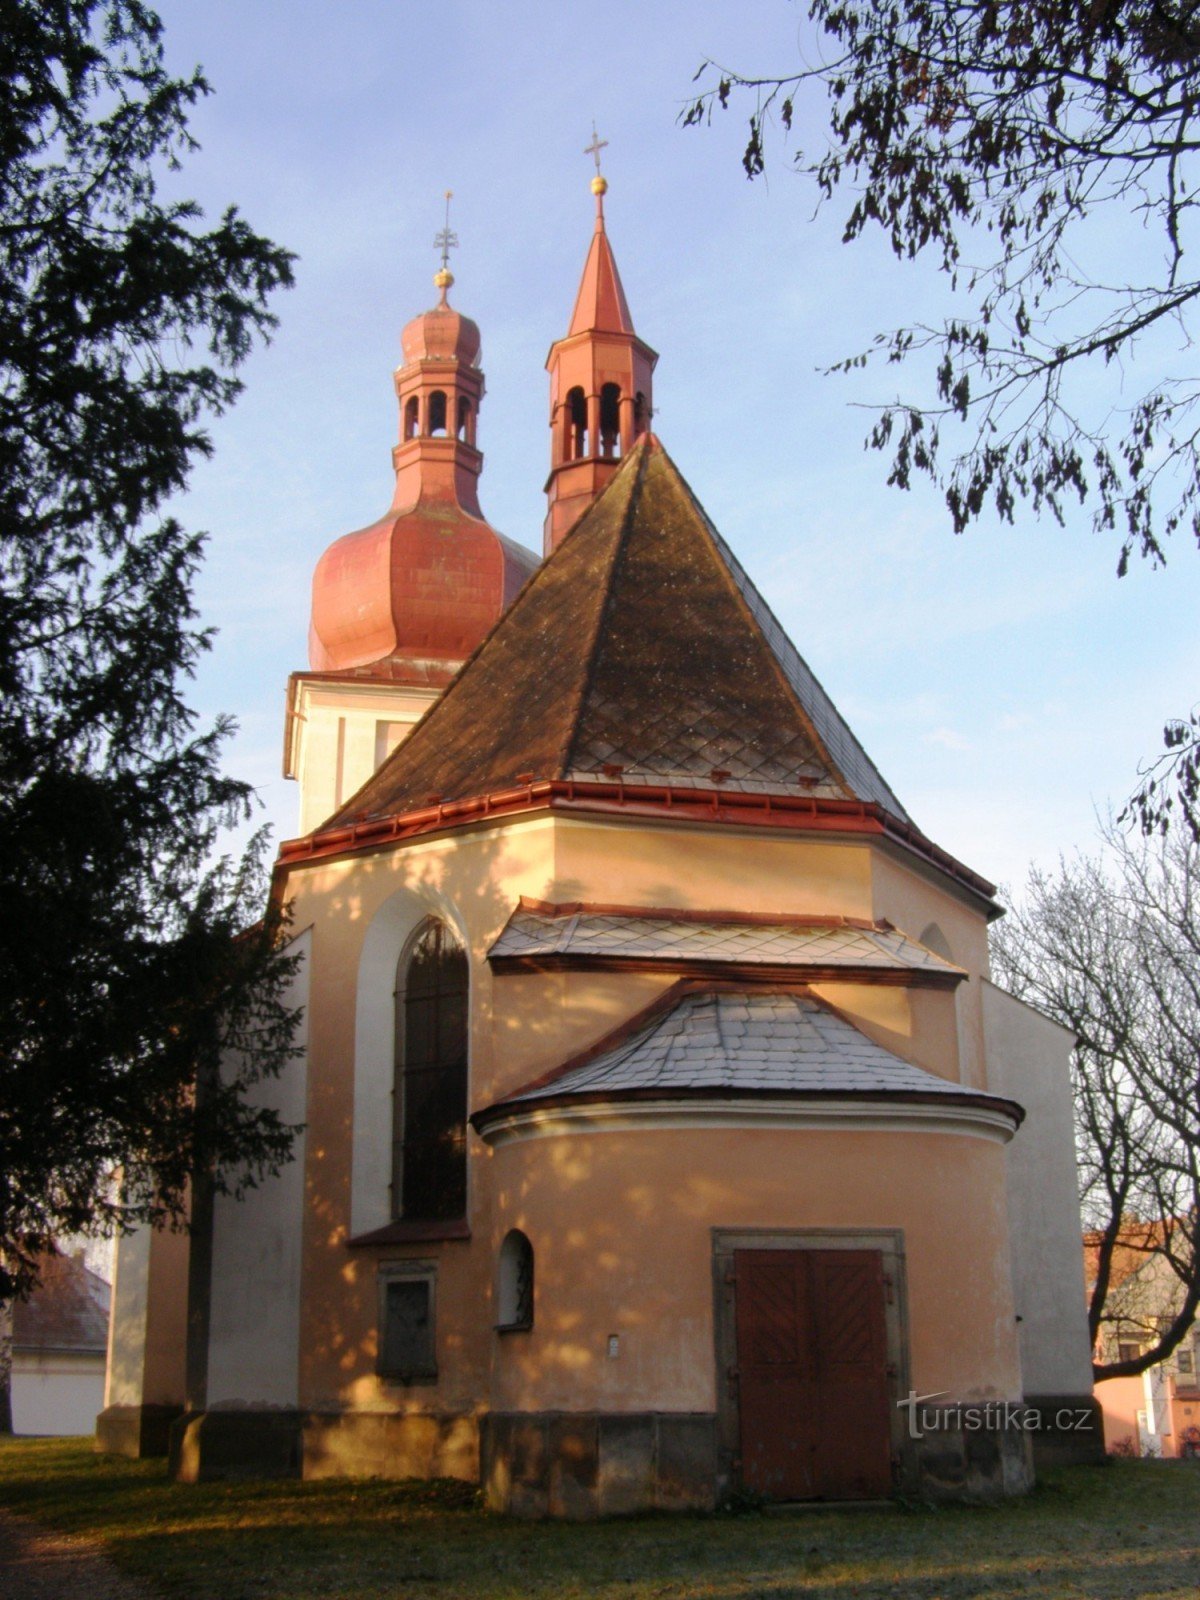 Jaroměř - crkva sv. Jakub